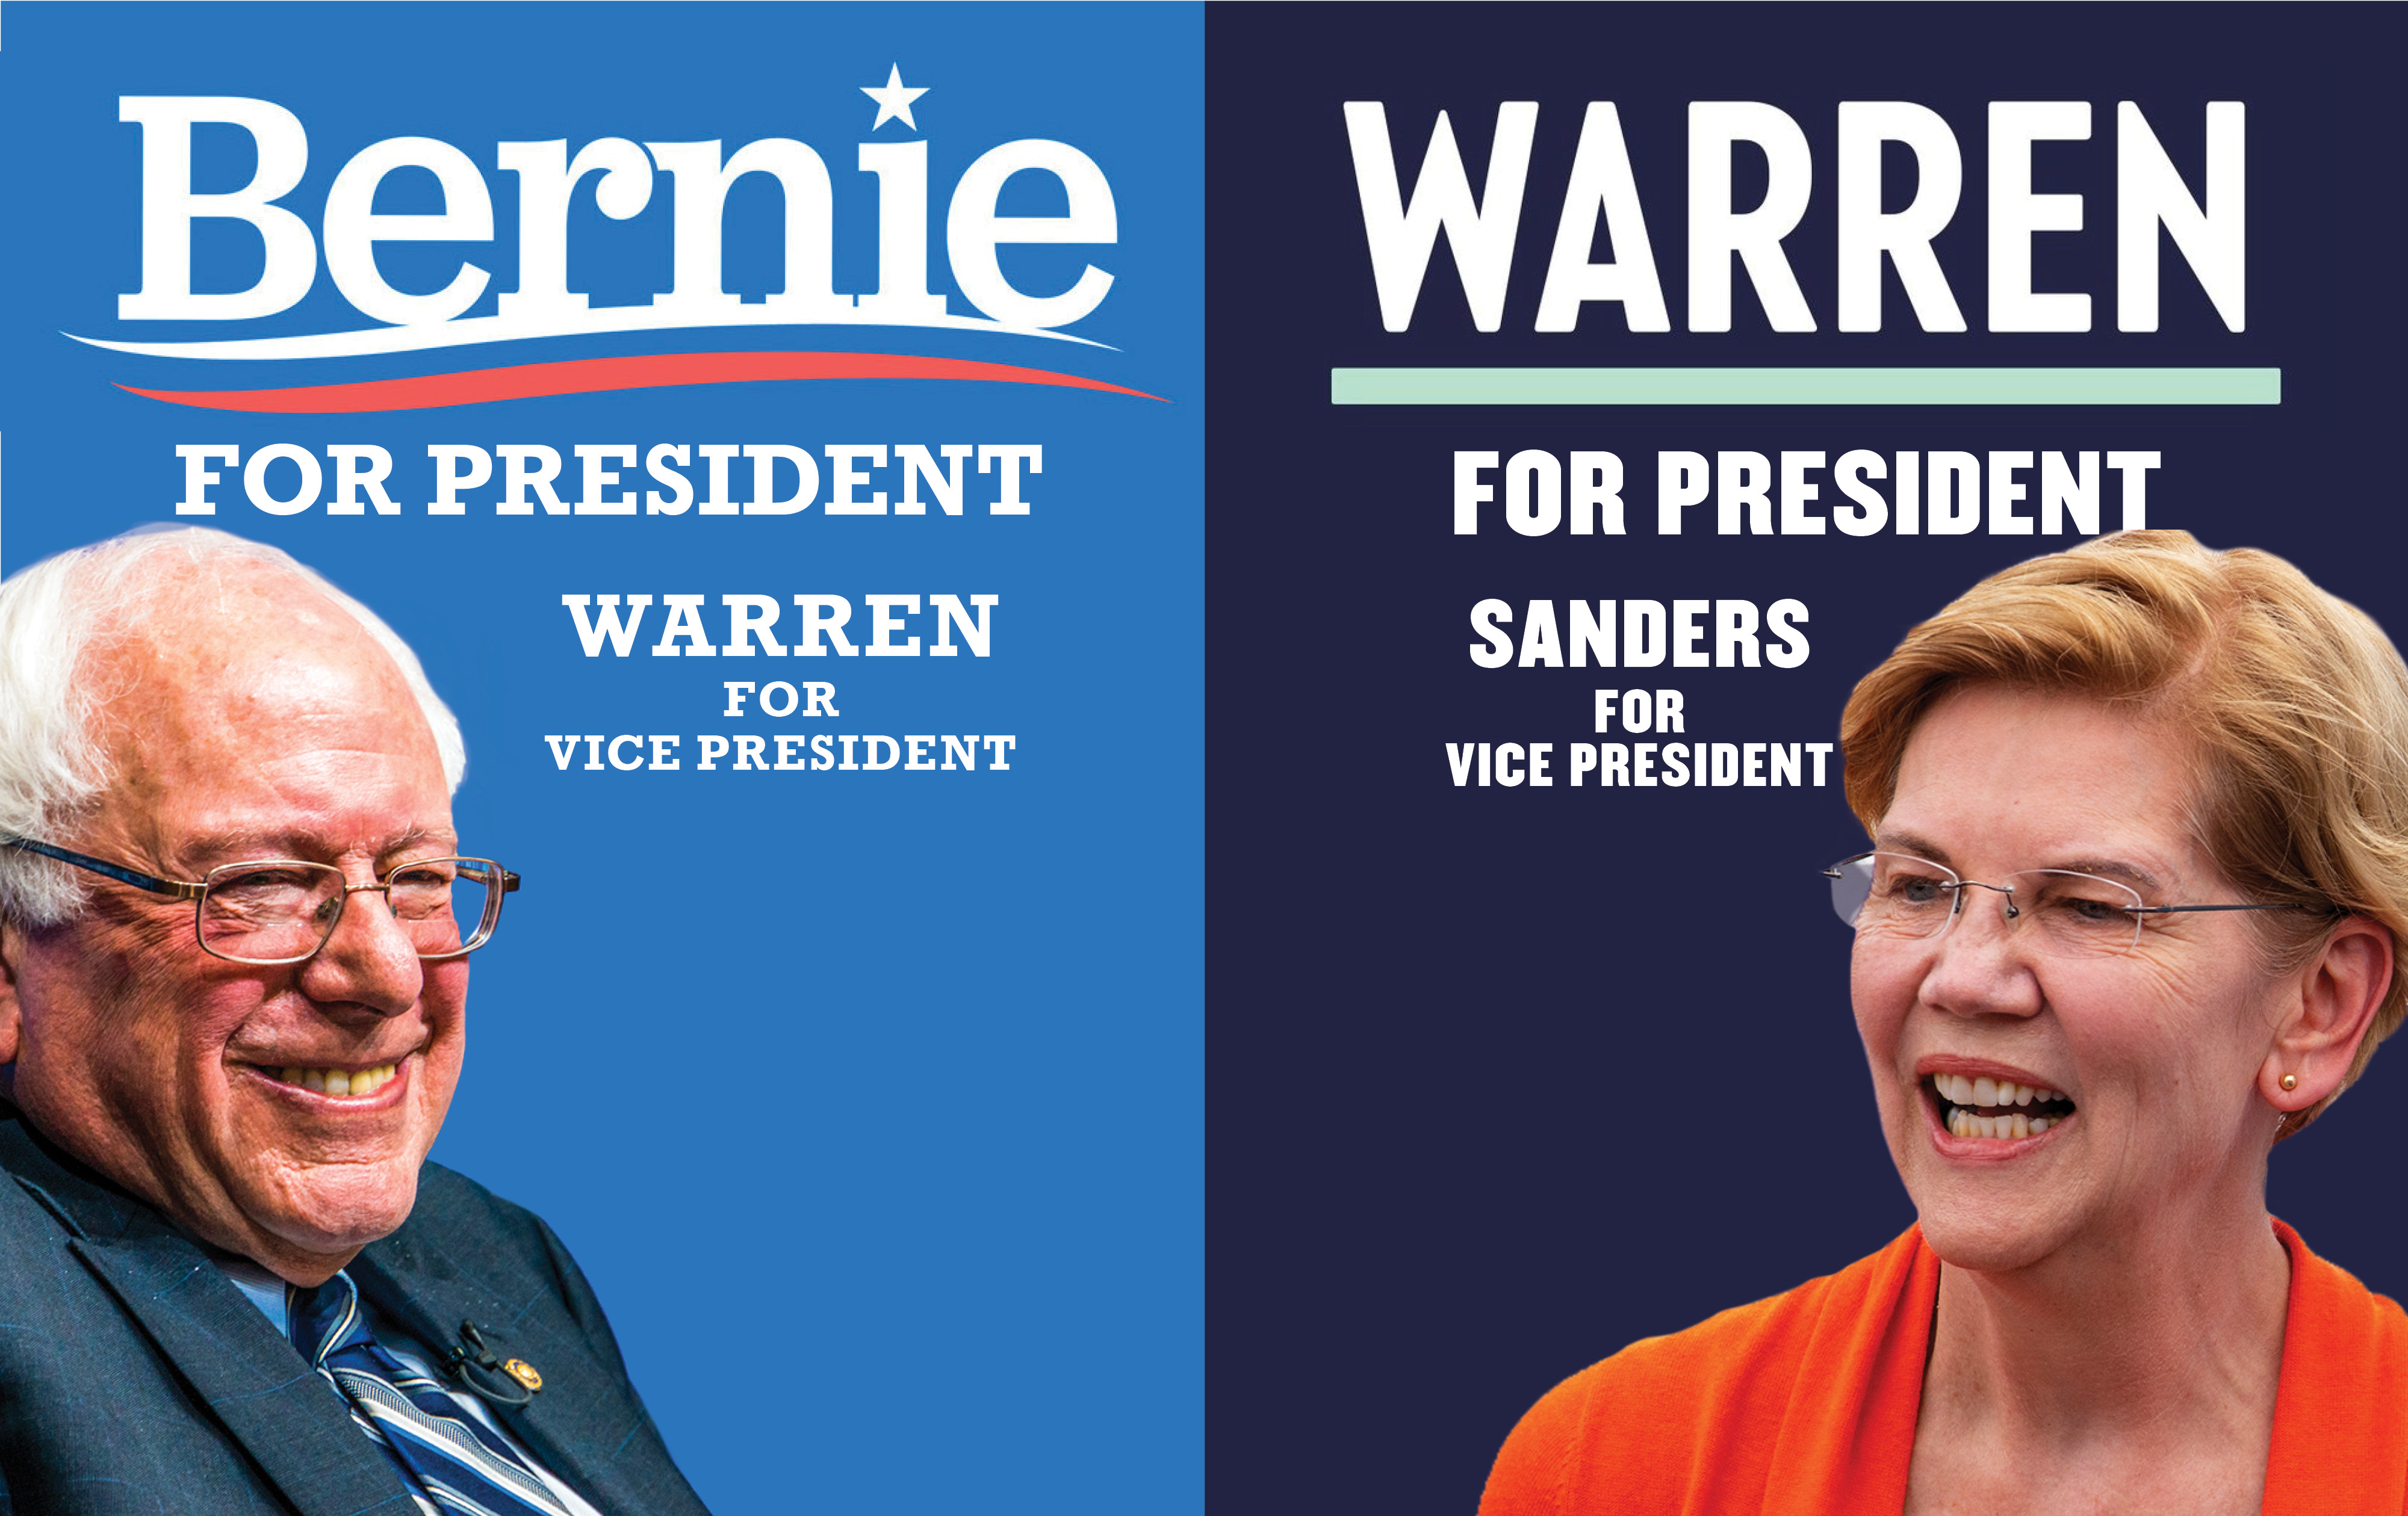 Sanders or Warren? Why Not Both?